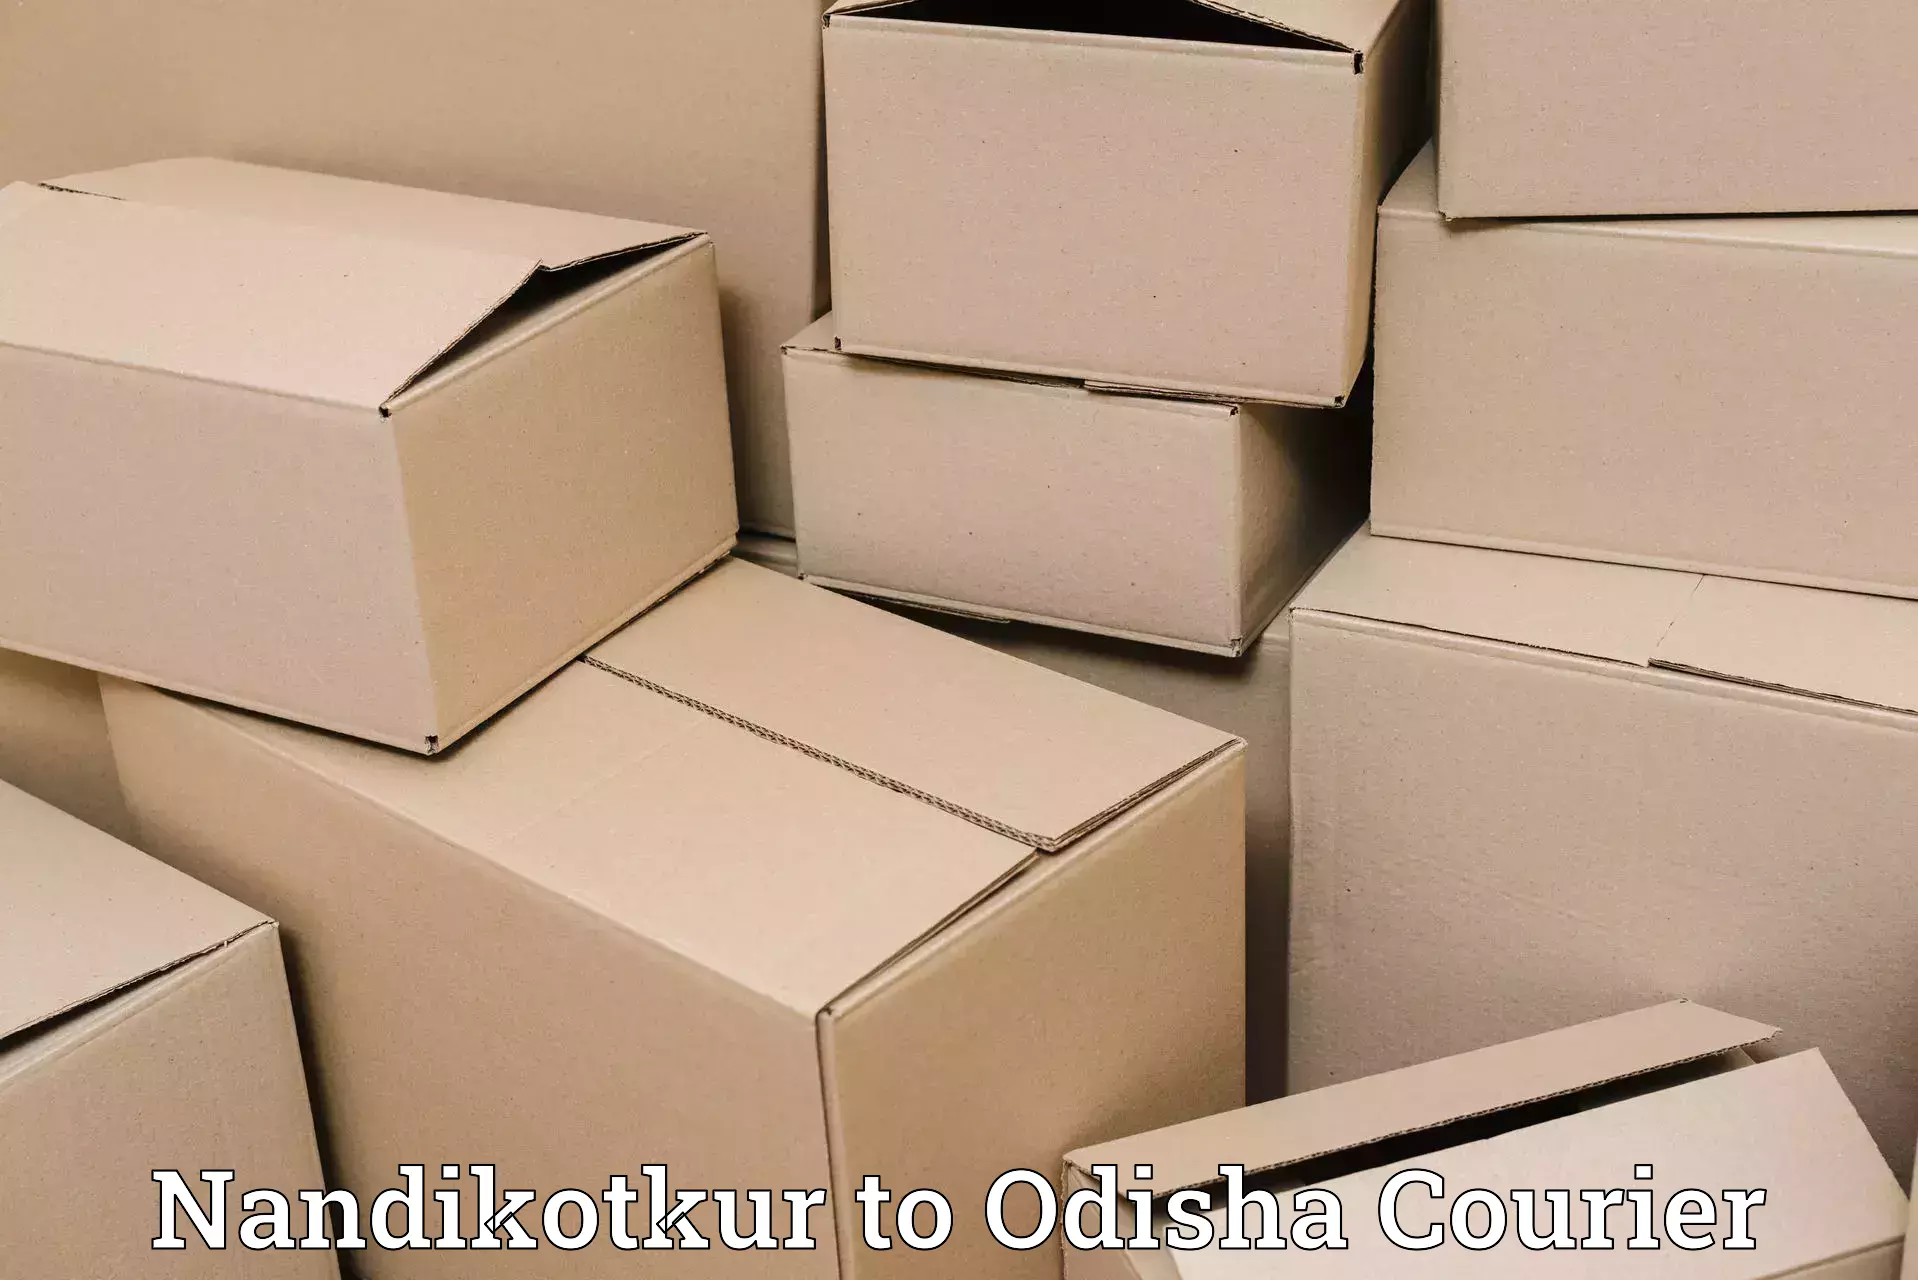 Smart parcel tracking in Nandikotkur to Odisha